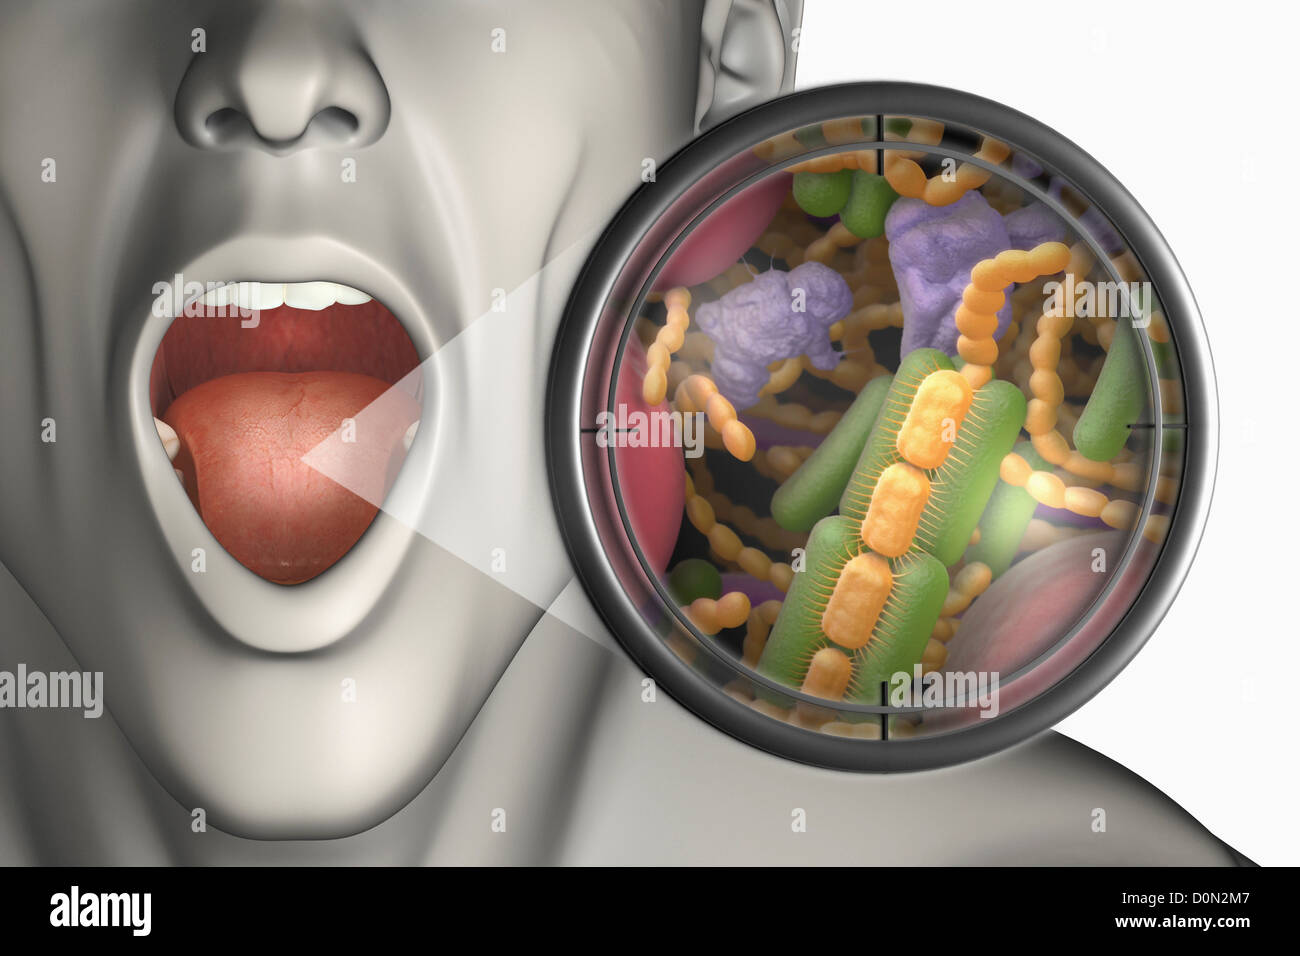 Микроорганизмы полости рта. Бактерии ротовой полости человека.